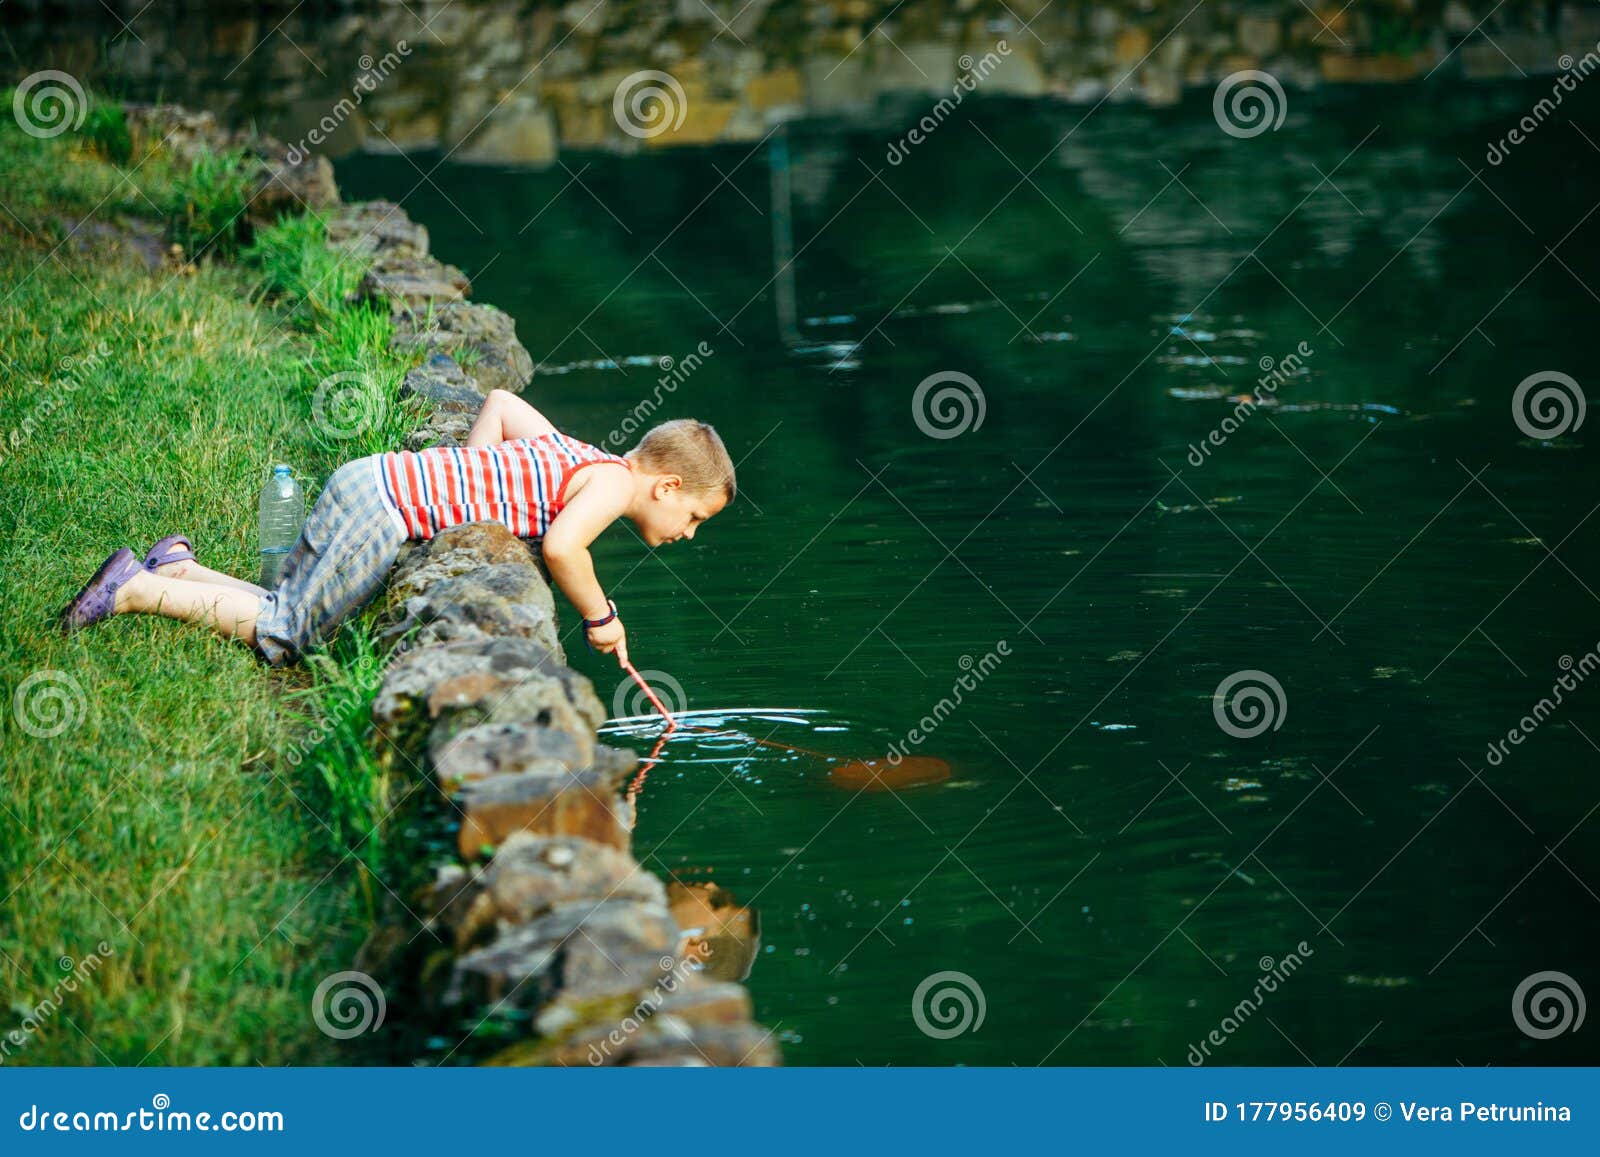 Lviv, Ukraine - June 23, 2019: Kid with Fish Net Looking Tadpole